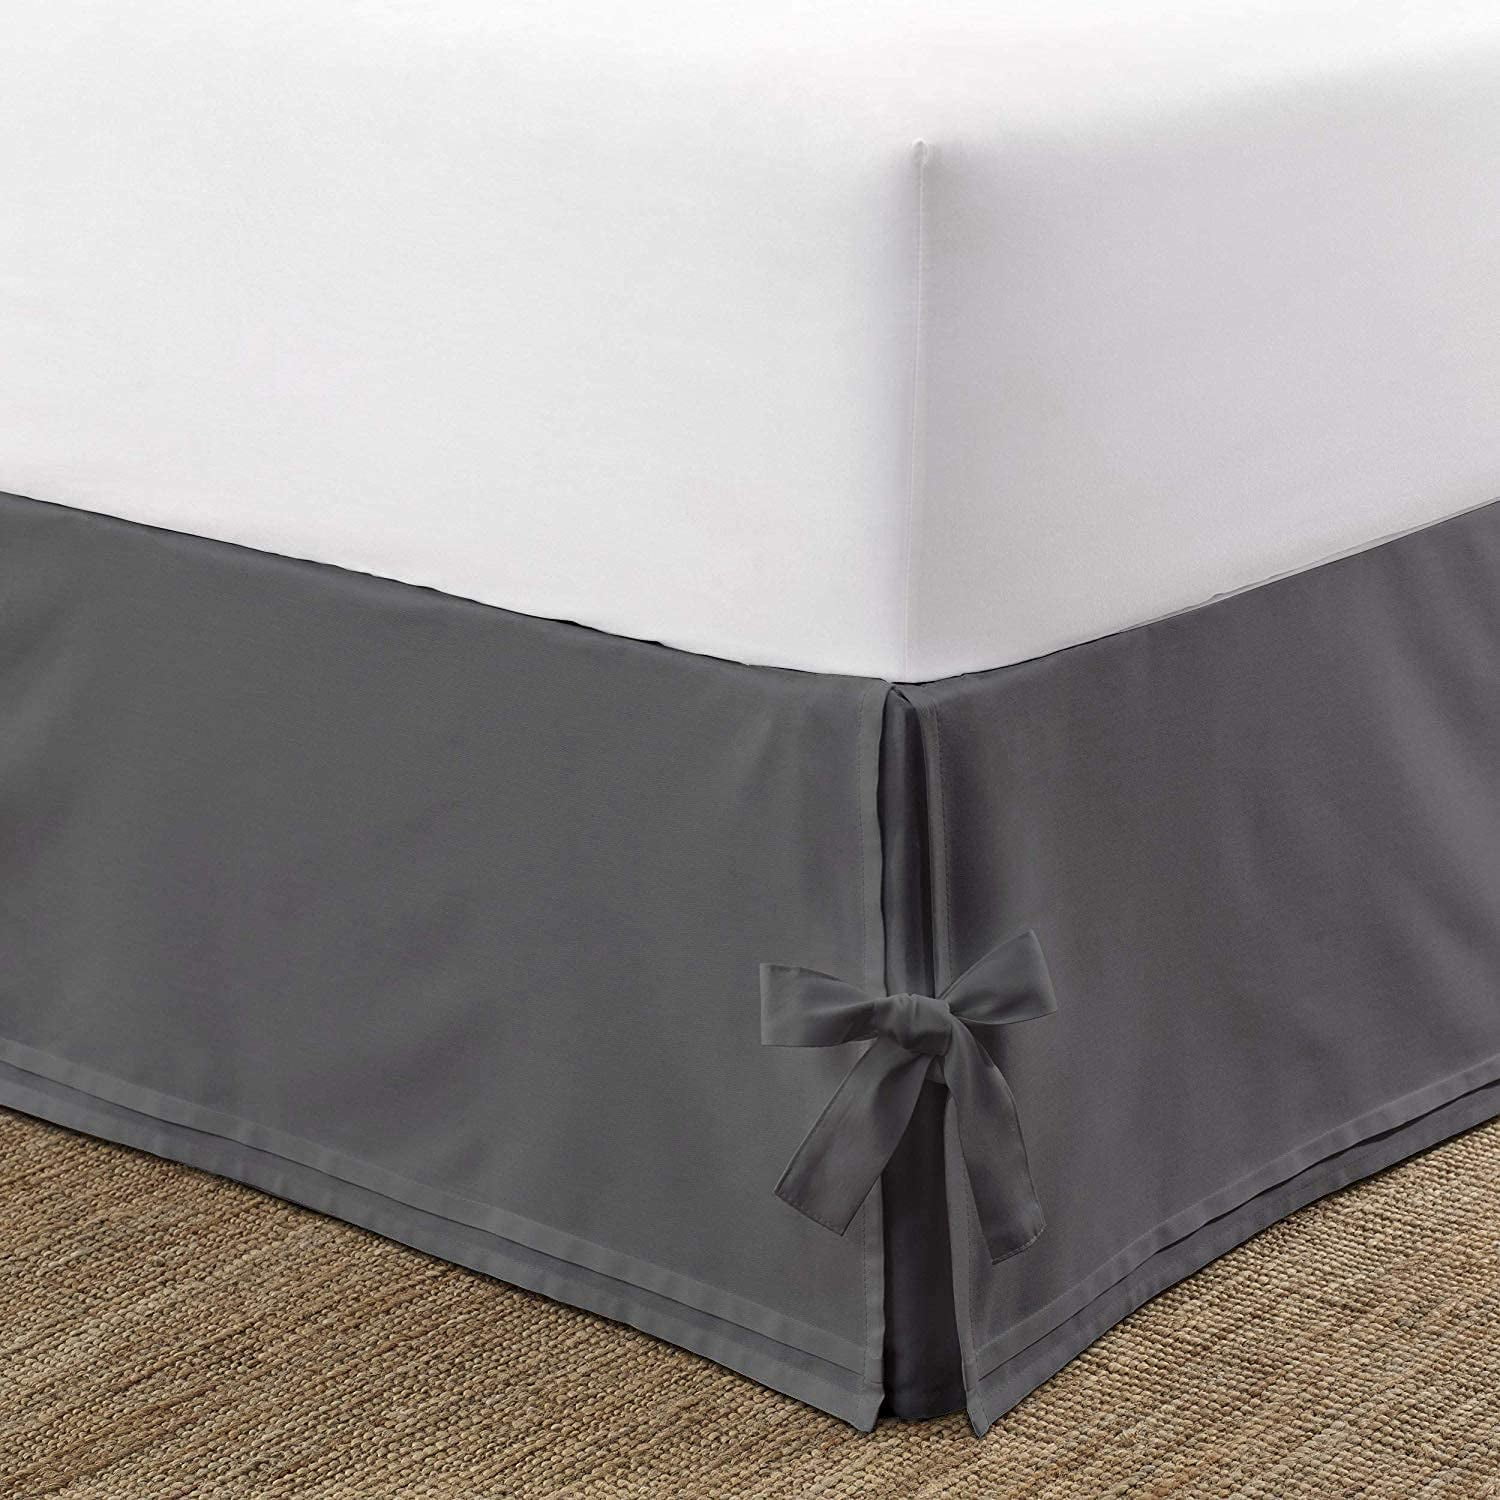 Beige Striped Split Corner Bedskirt Choose Drop Length US Size 800 Count 